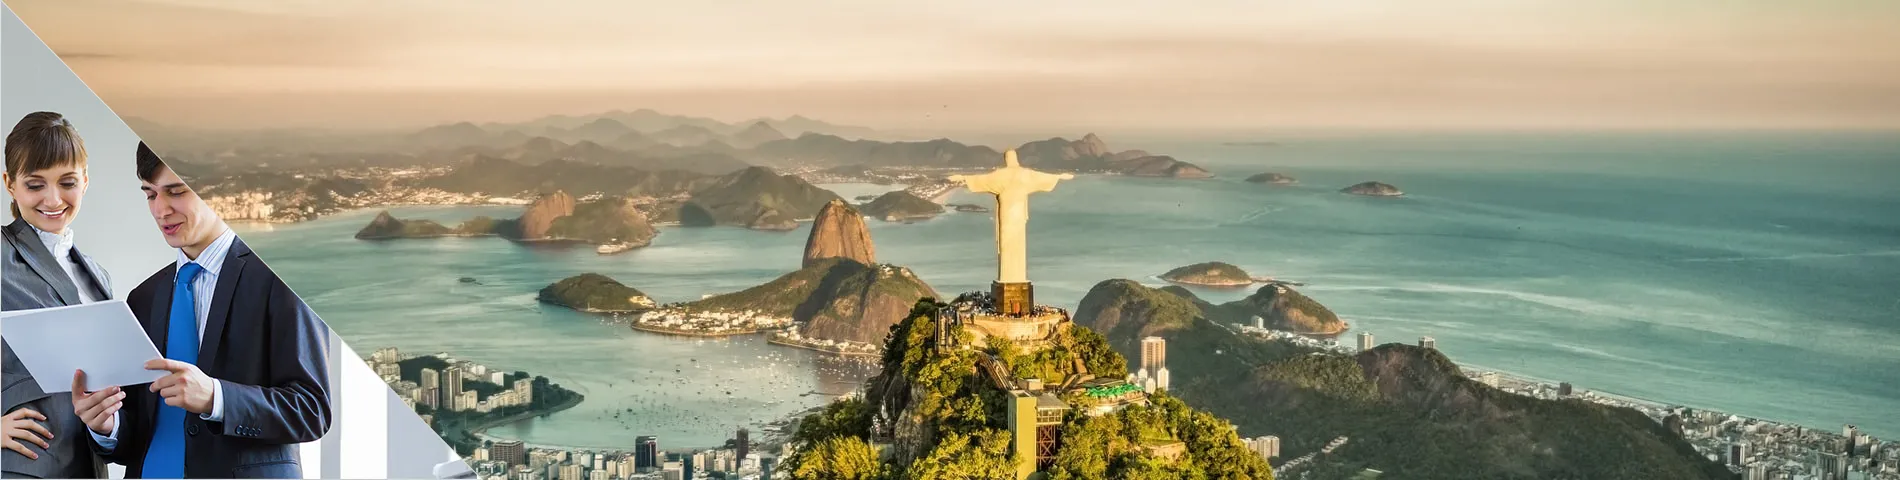 Rio de Janeiro - Negócios Individual